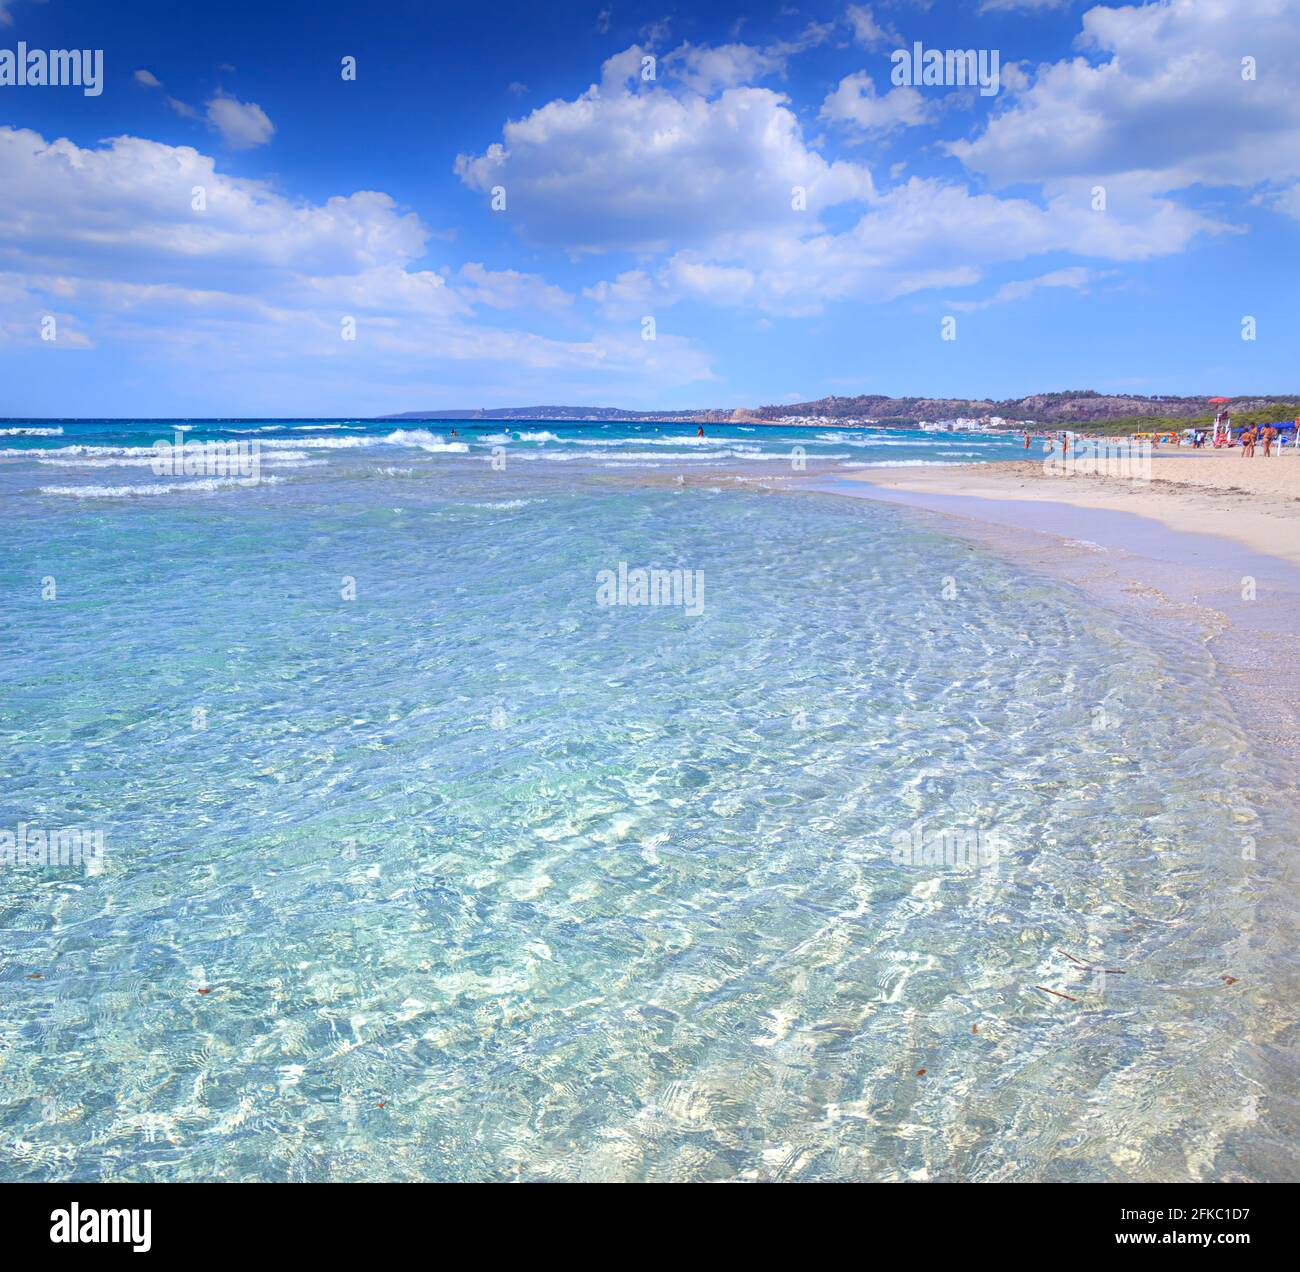 Rivabella Beach in Salento, Apulia (Italy). Stock Photo